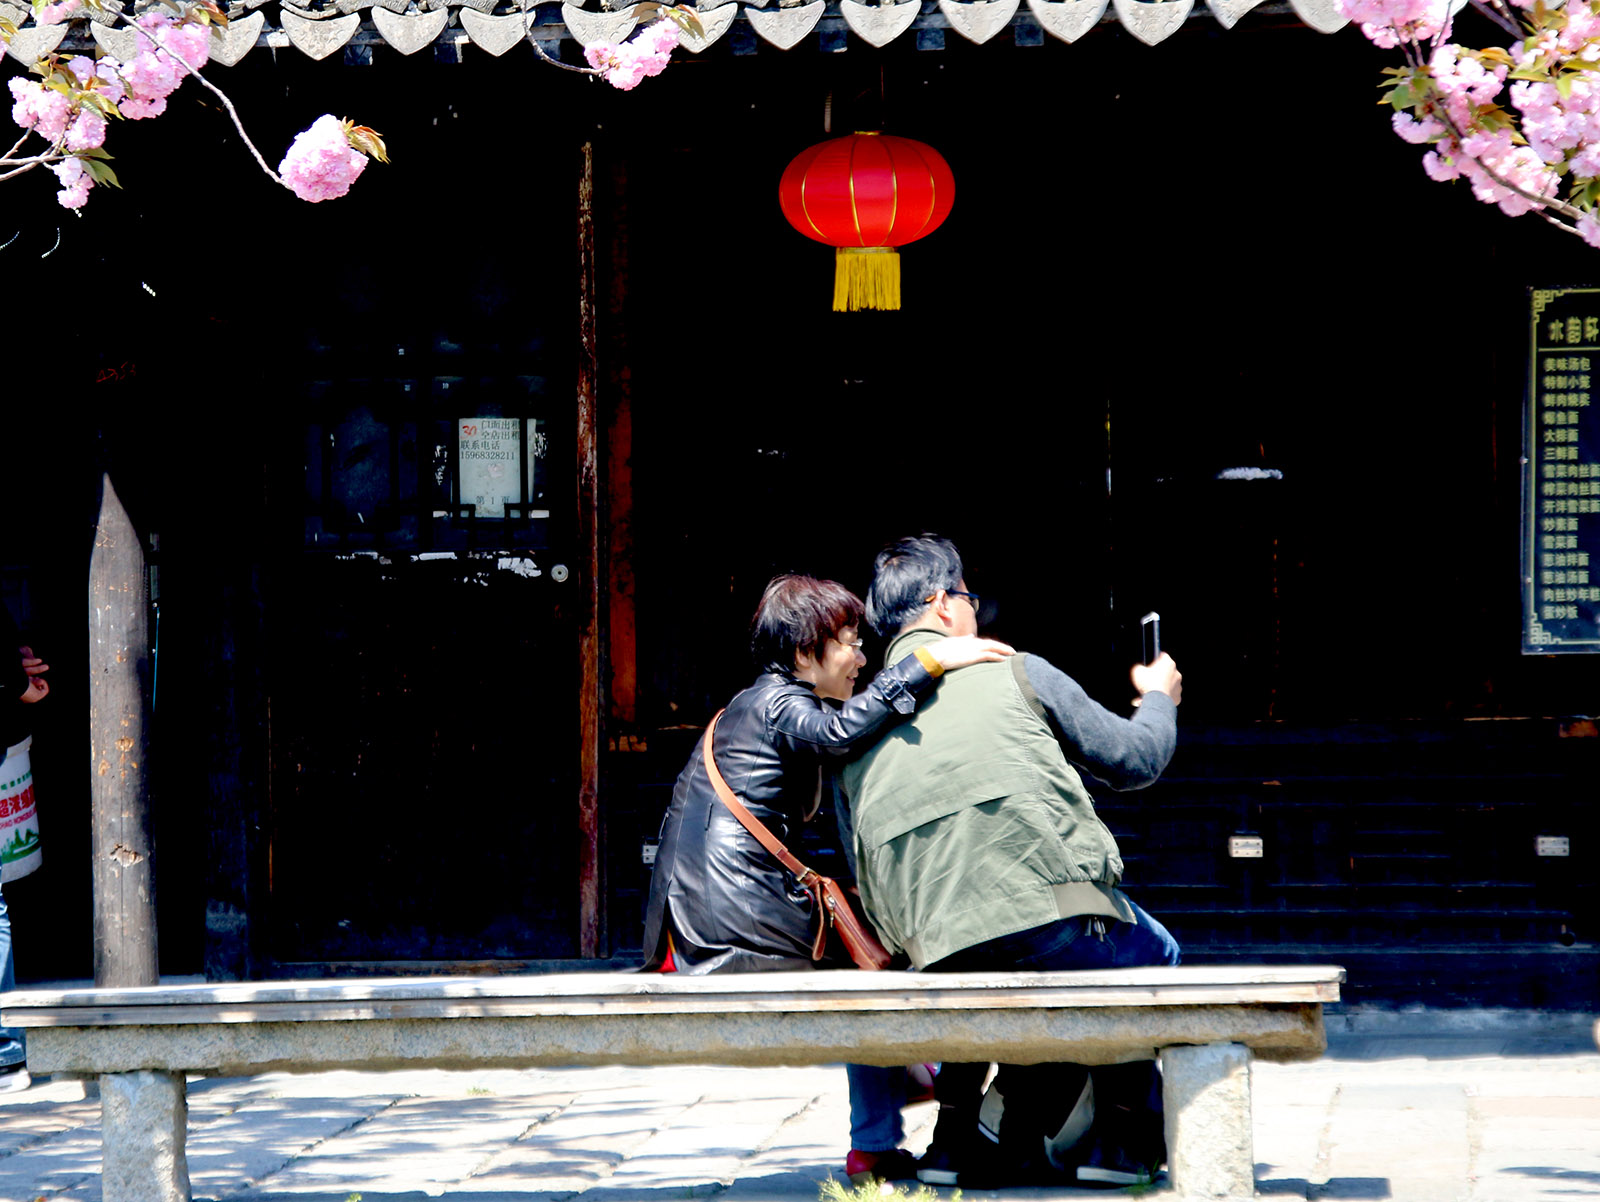 沈慧琳(小學組)上海《晚年幸福》退休后的外公外婆過著另一種愜意的生活，觀光旅游，在增進彼此感情的同時領略祖國發展的美好風光。搜索復制